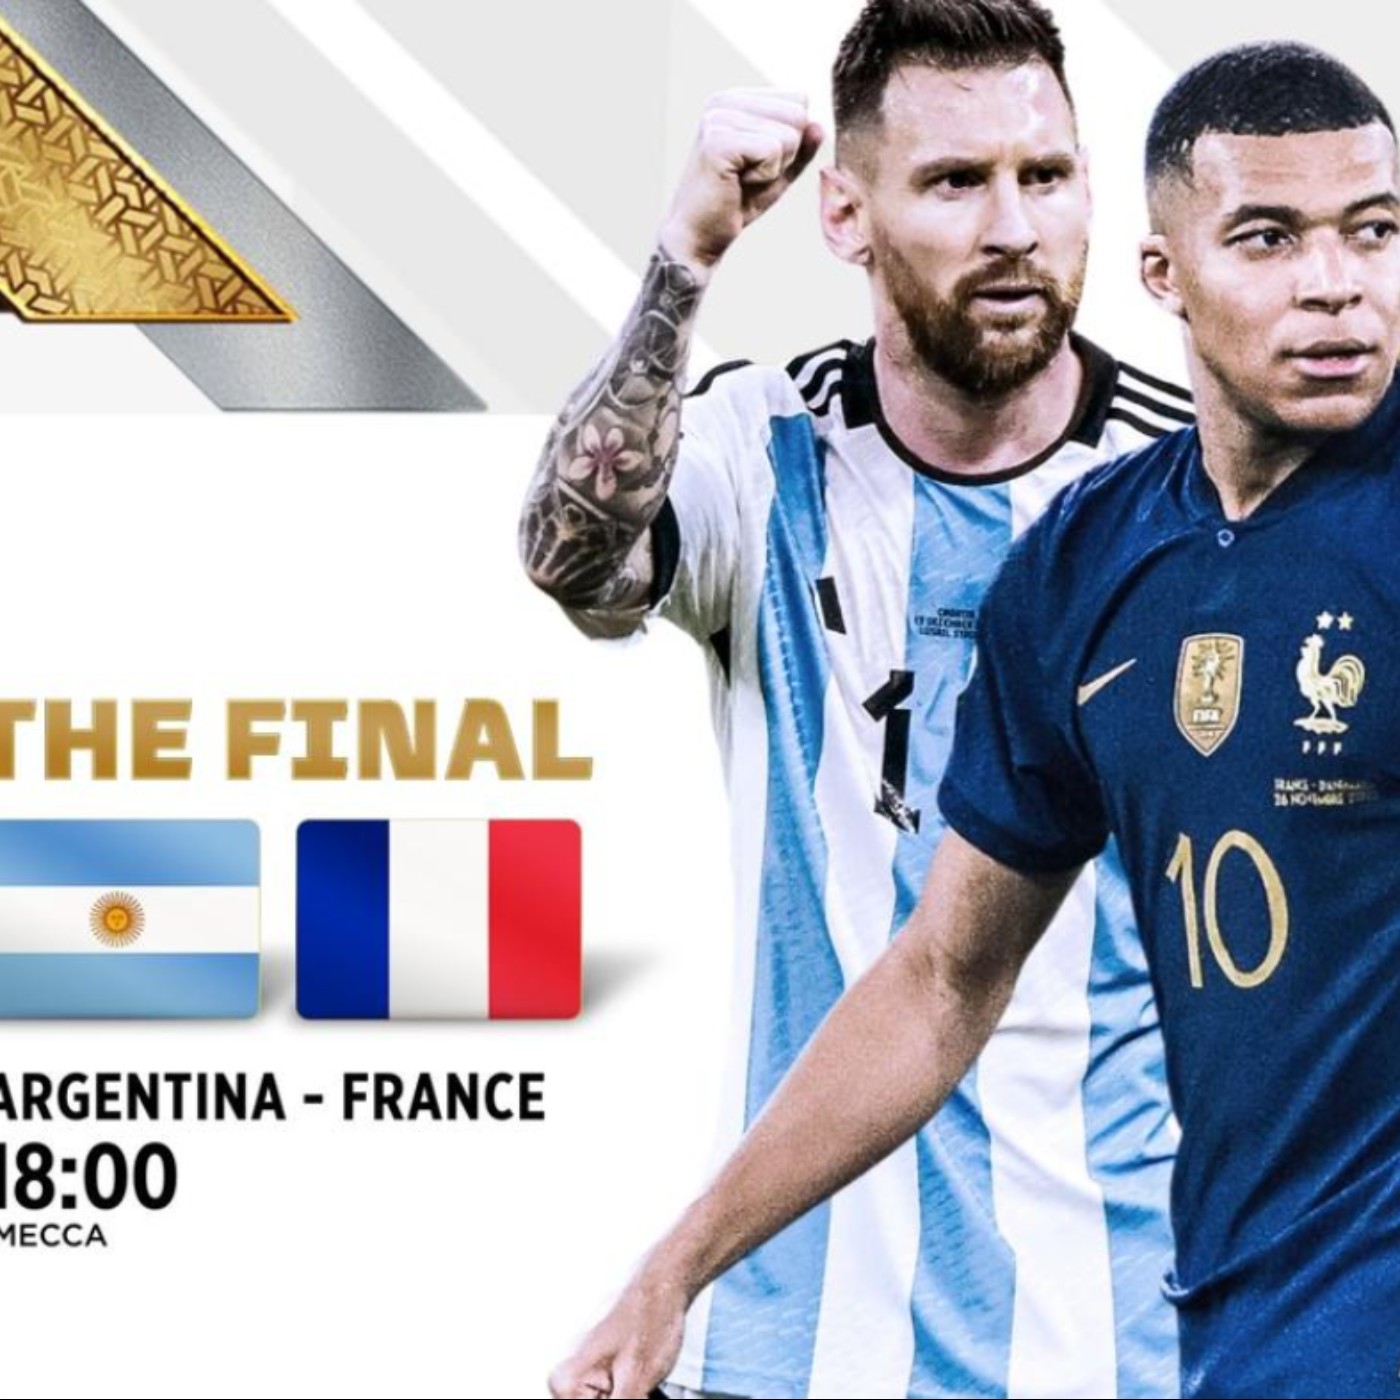 France Argentine En Direct Streaming Finale Coupe du Monde de la FIFA  Gratuit e TV TF1 et beIN SPORTS | Podcast on SoundOn